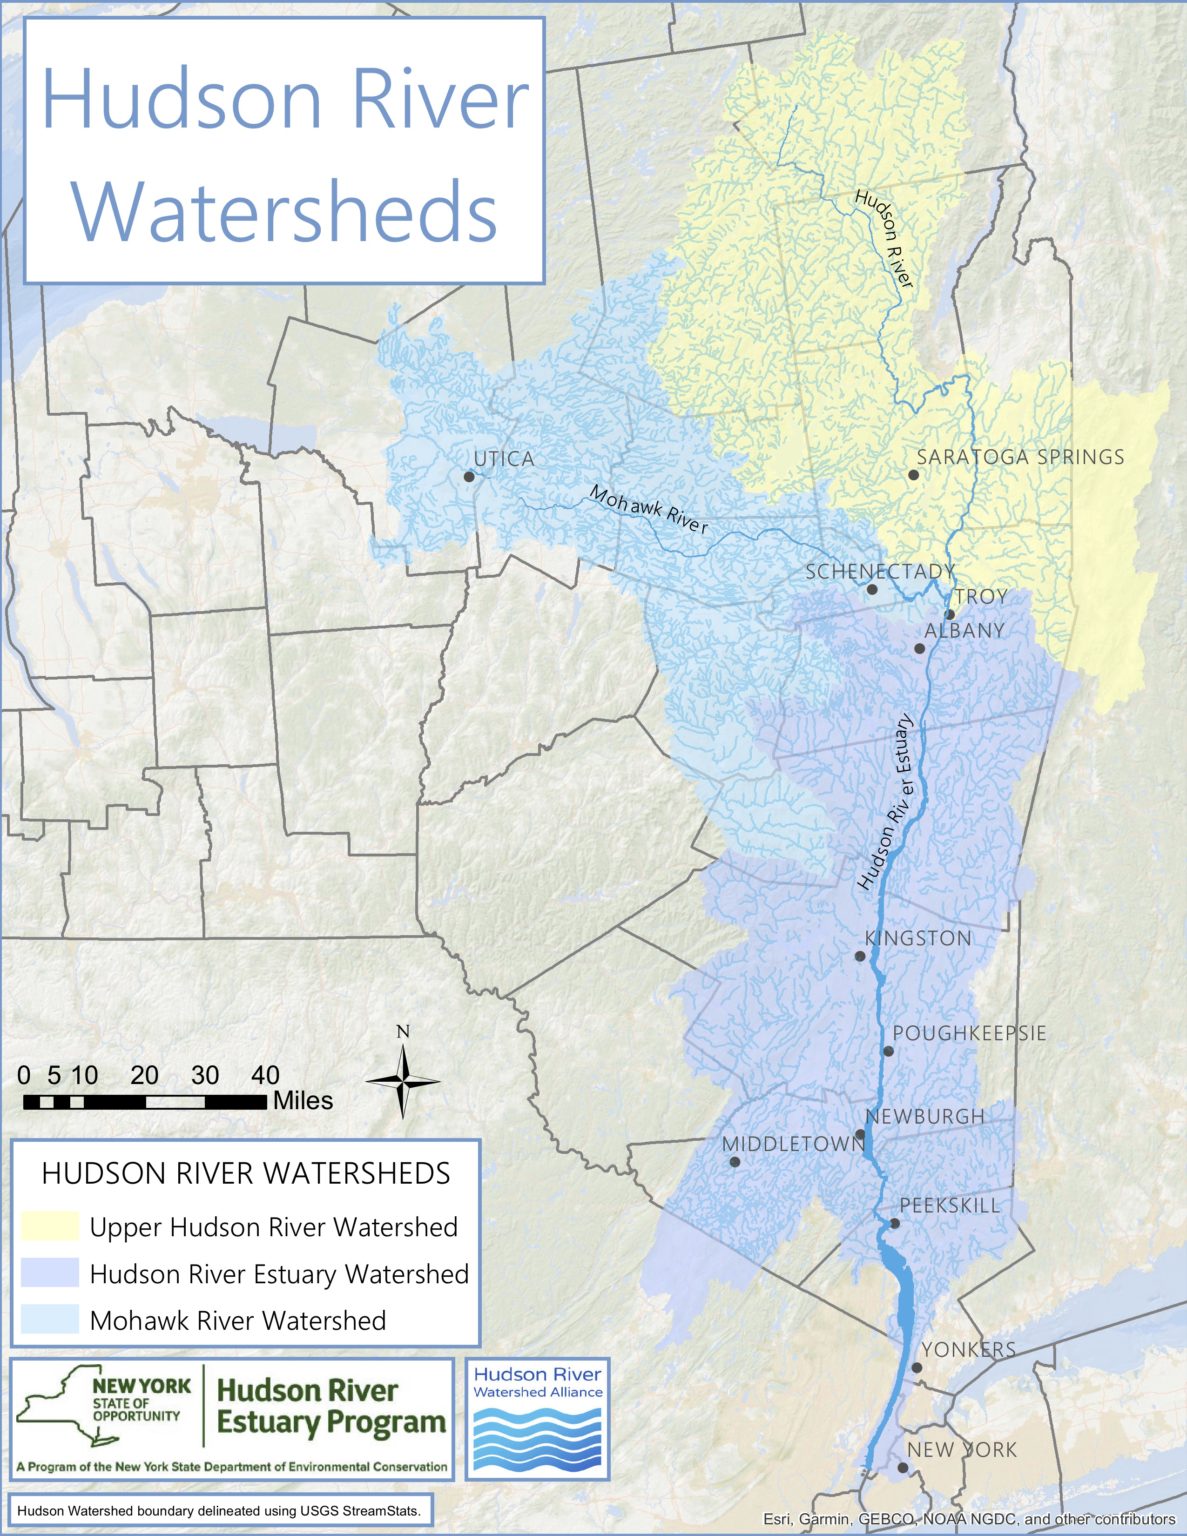 Hudson River Watershed - Hudson River Watershed Alliance